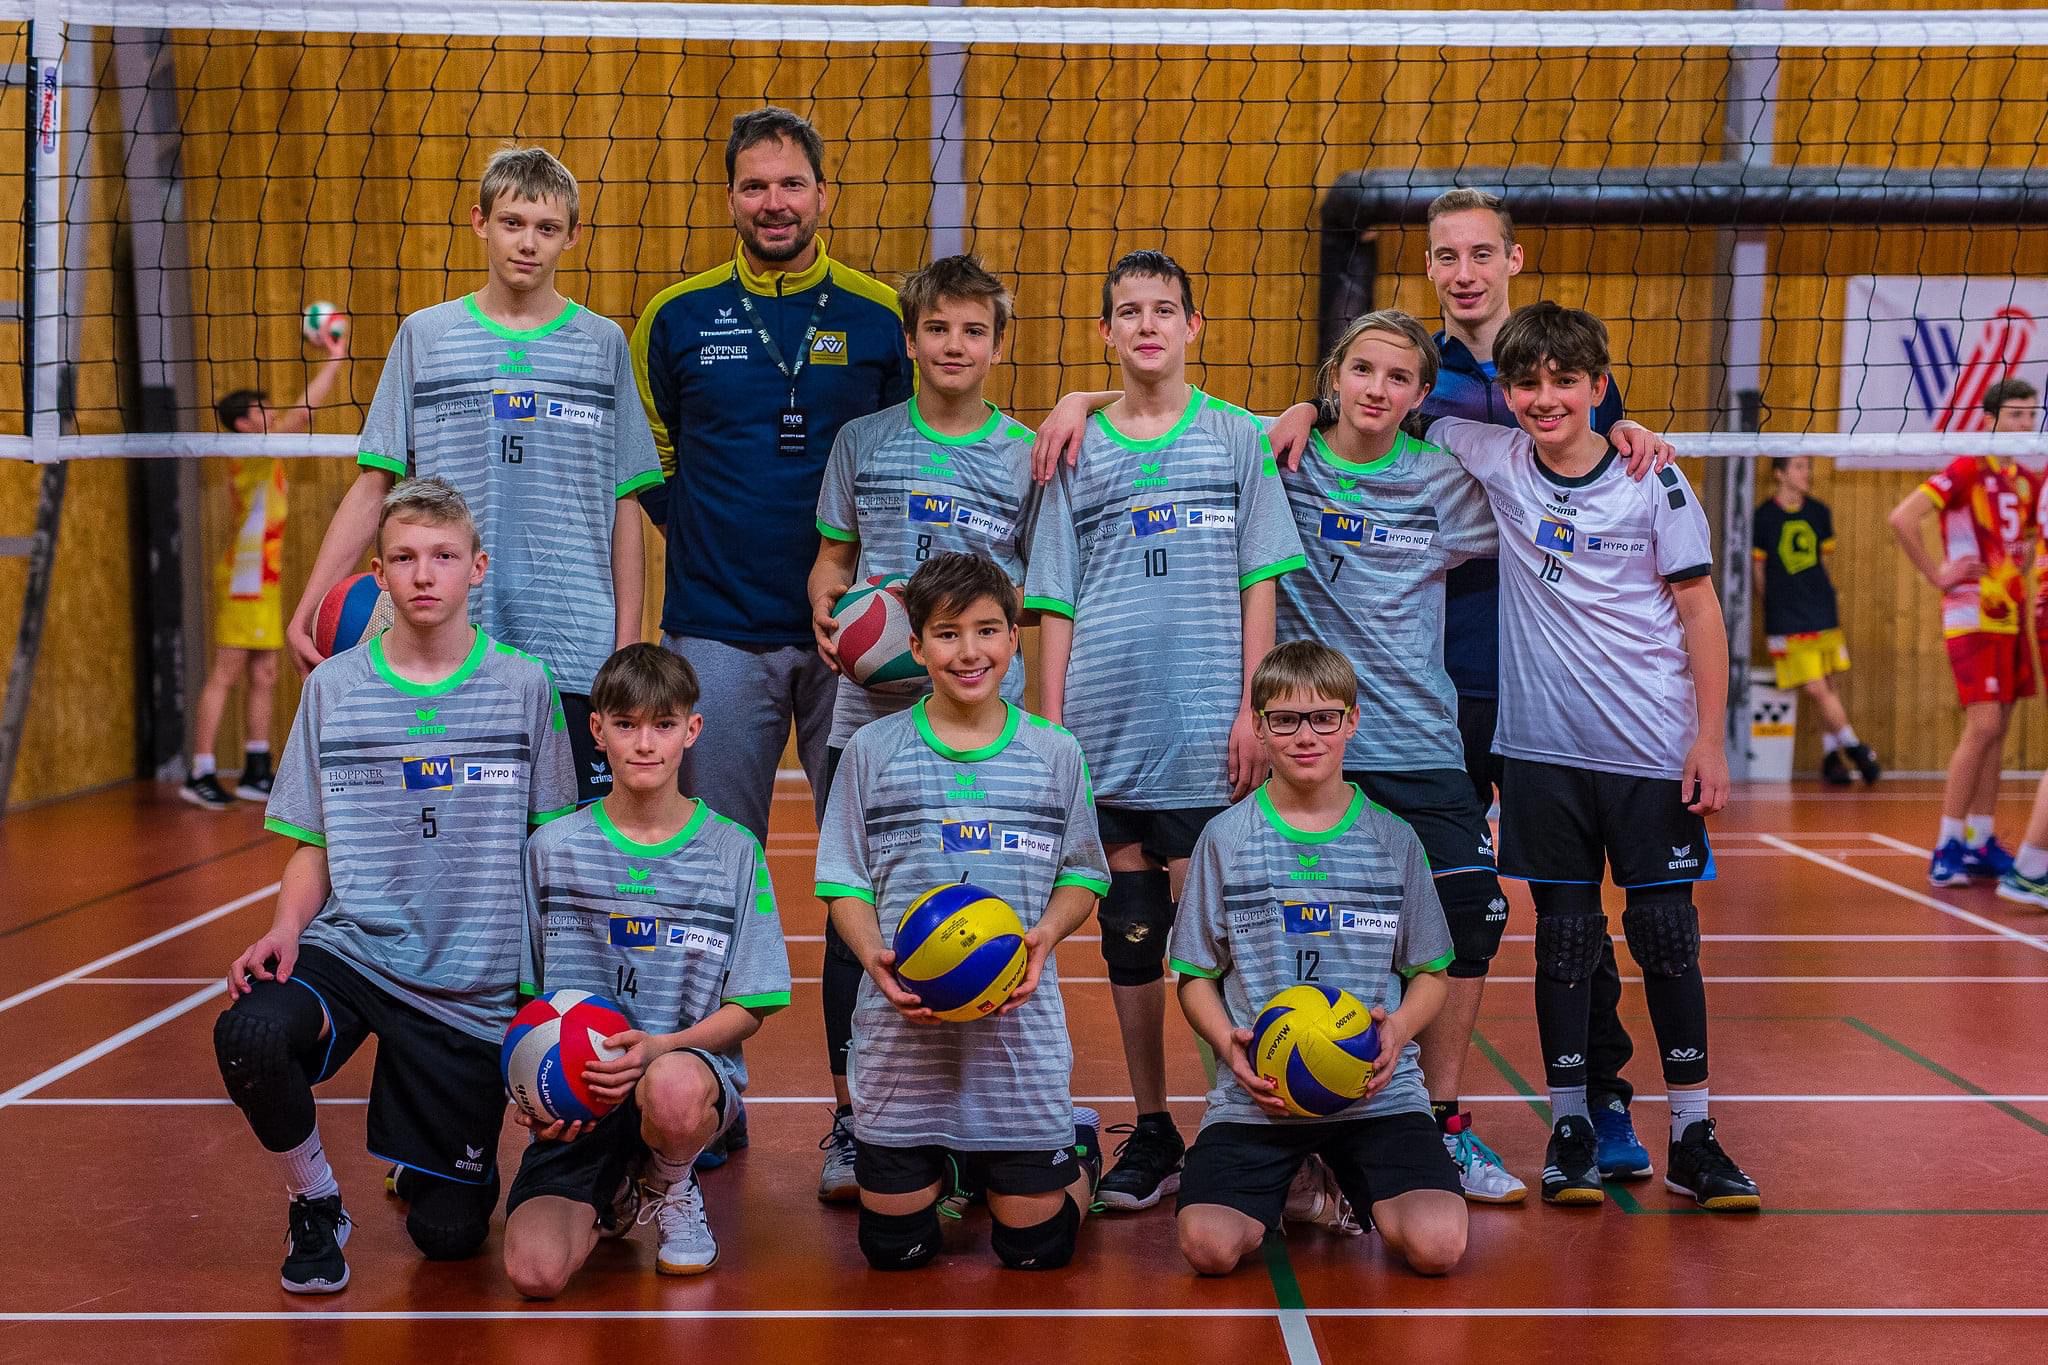 PVG-Prague Volleyball Games 2021-wir waren wieder dabei!